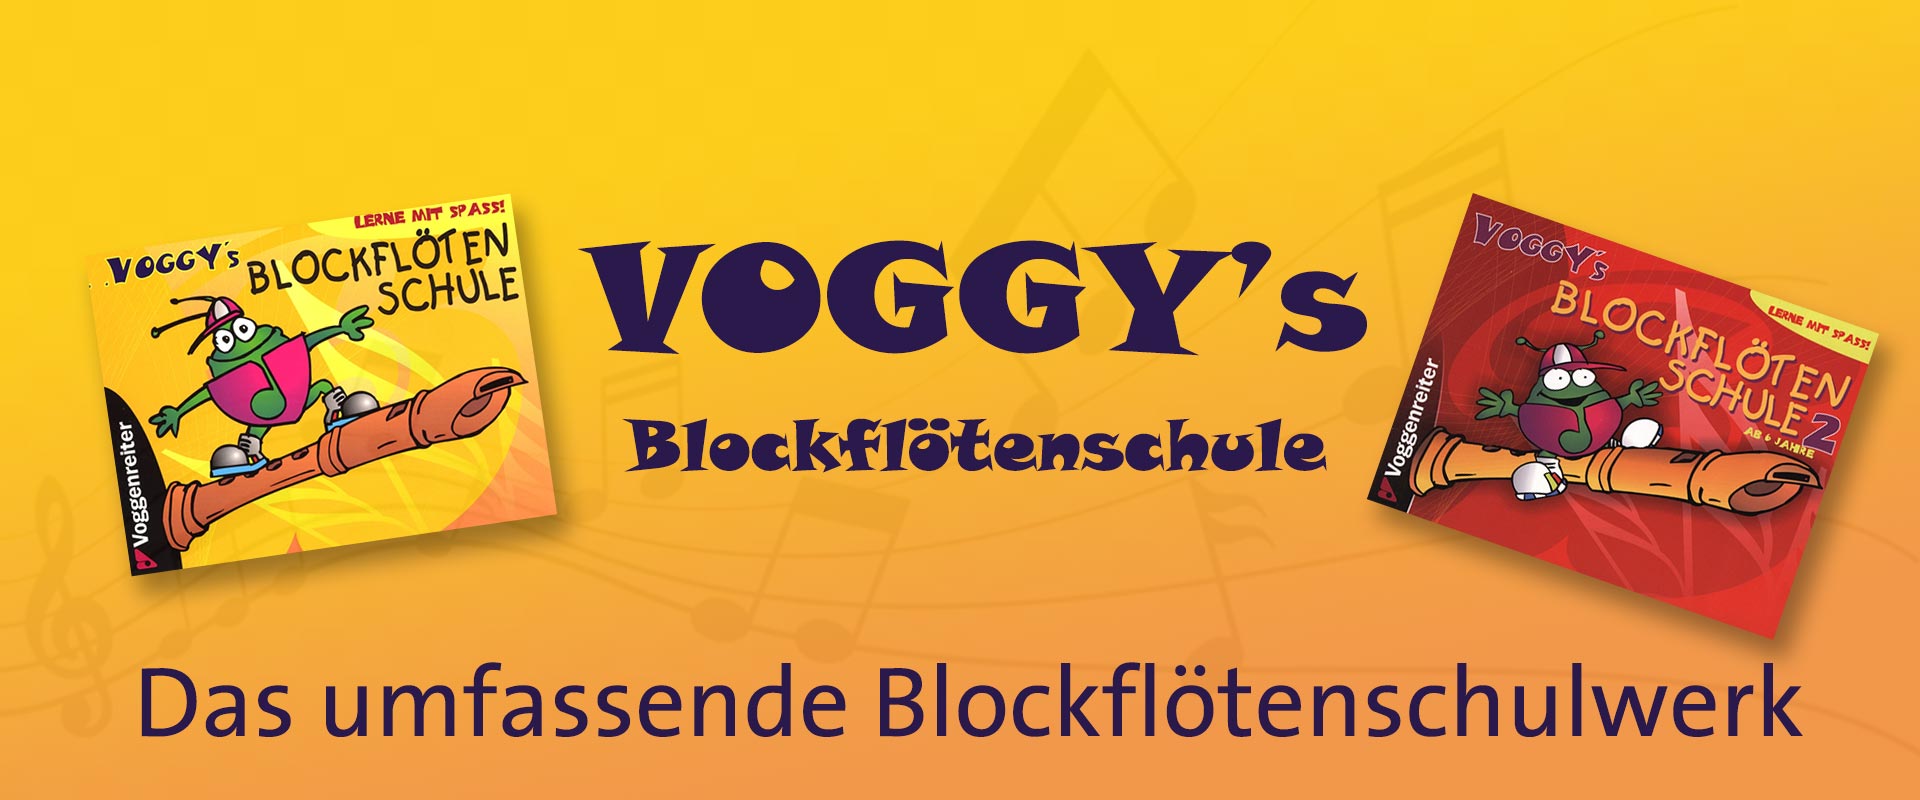 Voggys Blockflötenschule Header